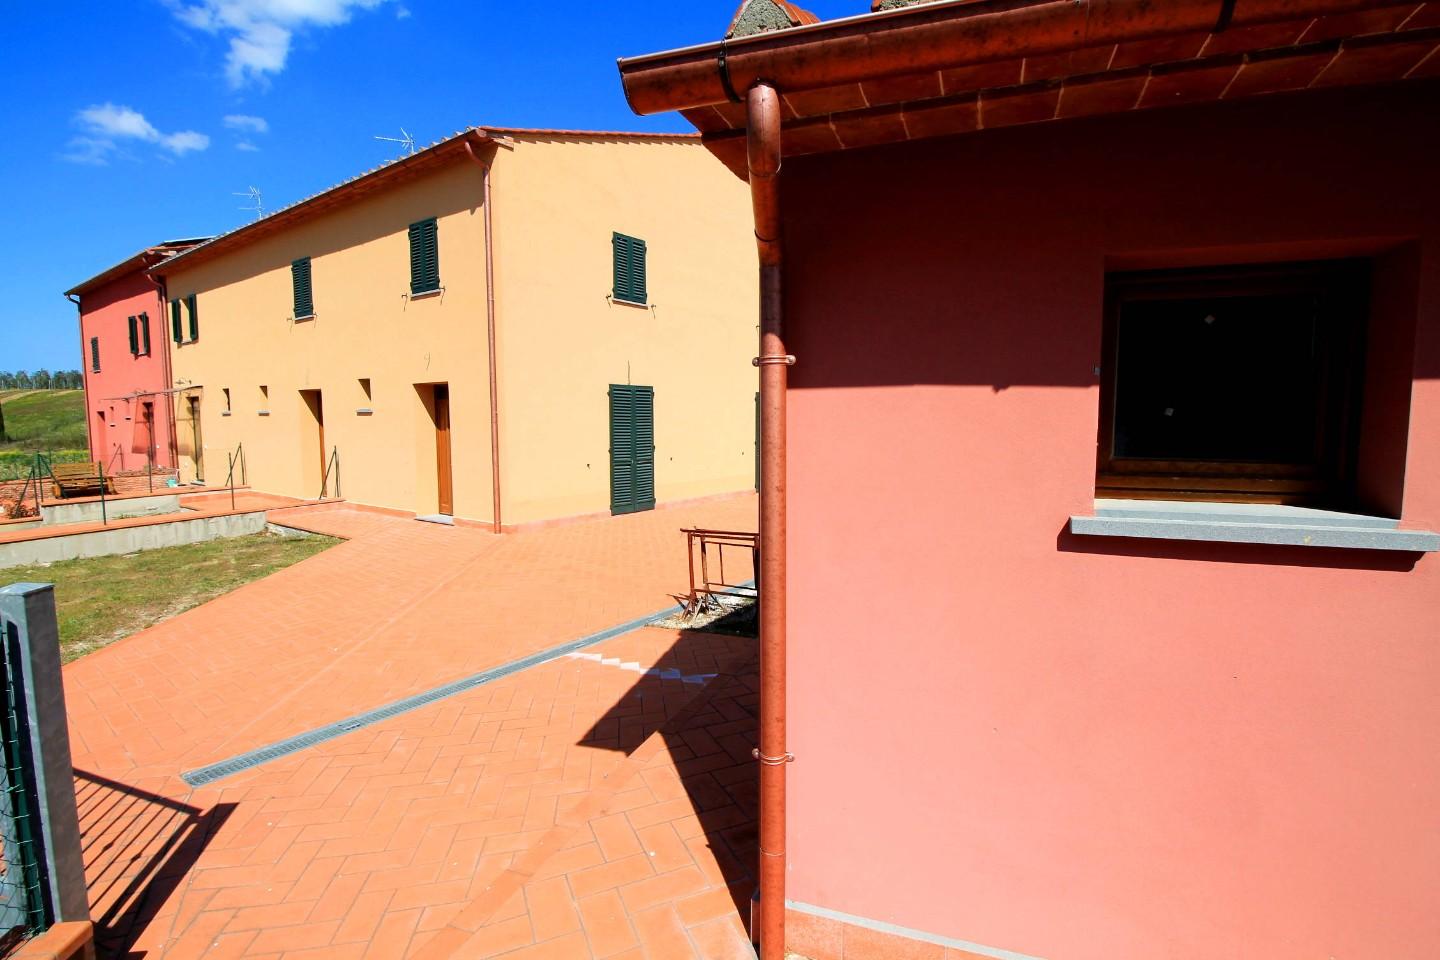 Rustico / Casale in vendita a Vinci, 5 locali, prezzo € 280.000 | PortaleAgenzieImmobiliari.it